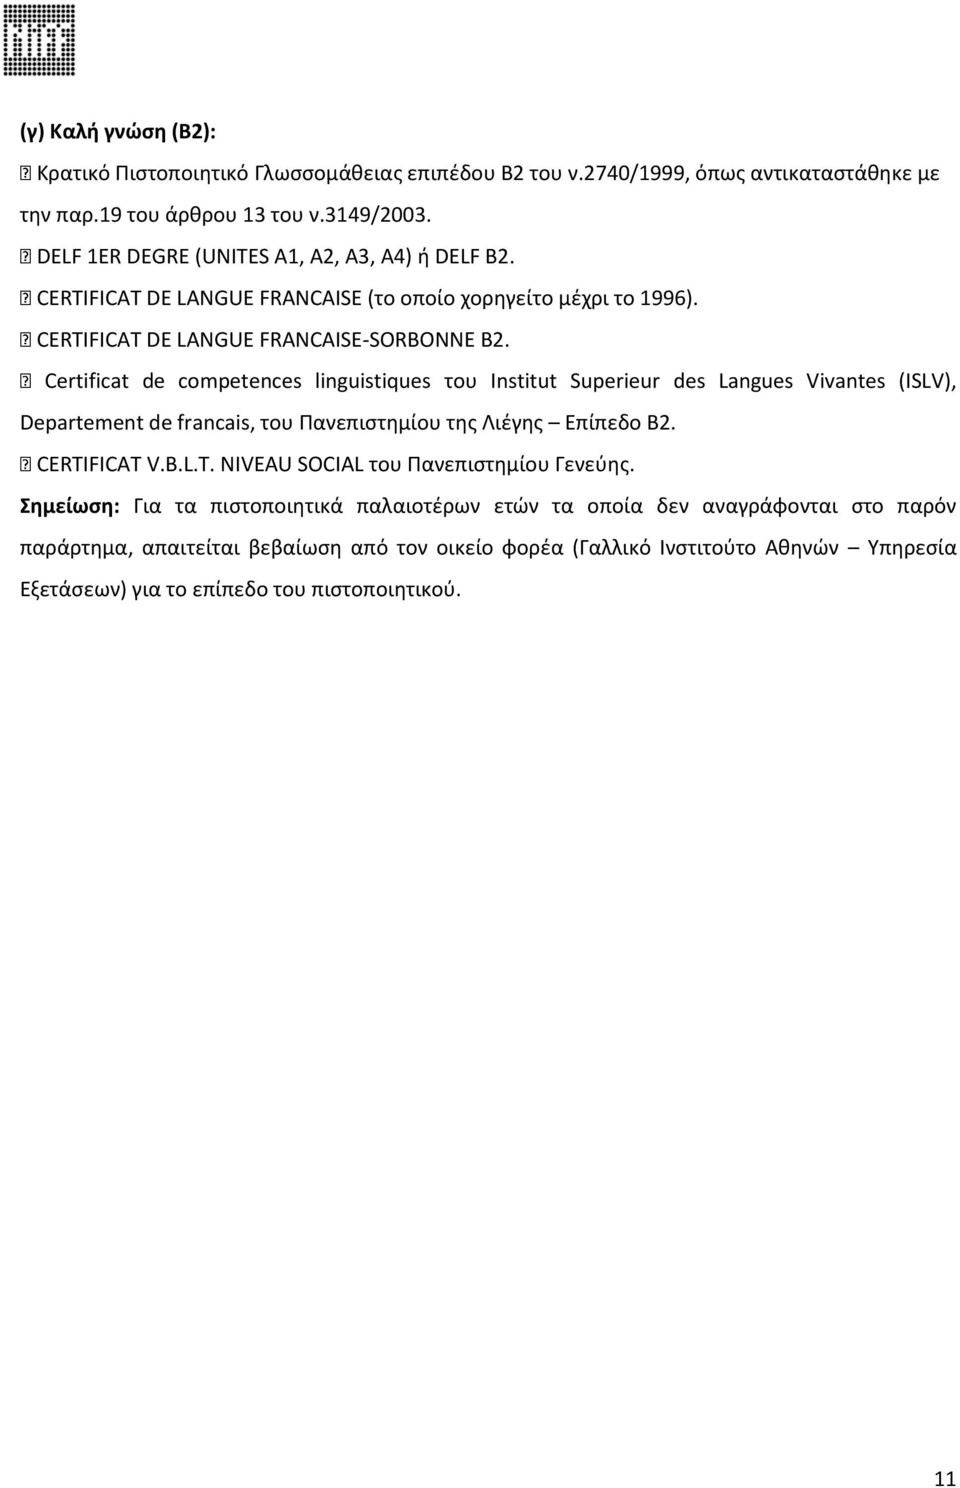 Certificat de competences linguistiques του Institut Superieur des Langues Vivantes (ISLV), Departement de francais, του Πανεπιστημίου της Λιέγης Επίπεδο Β2. CERTI